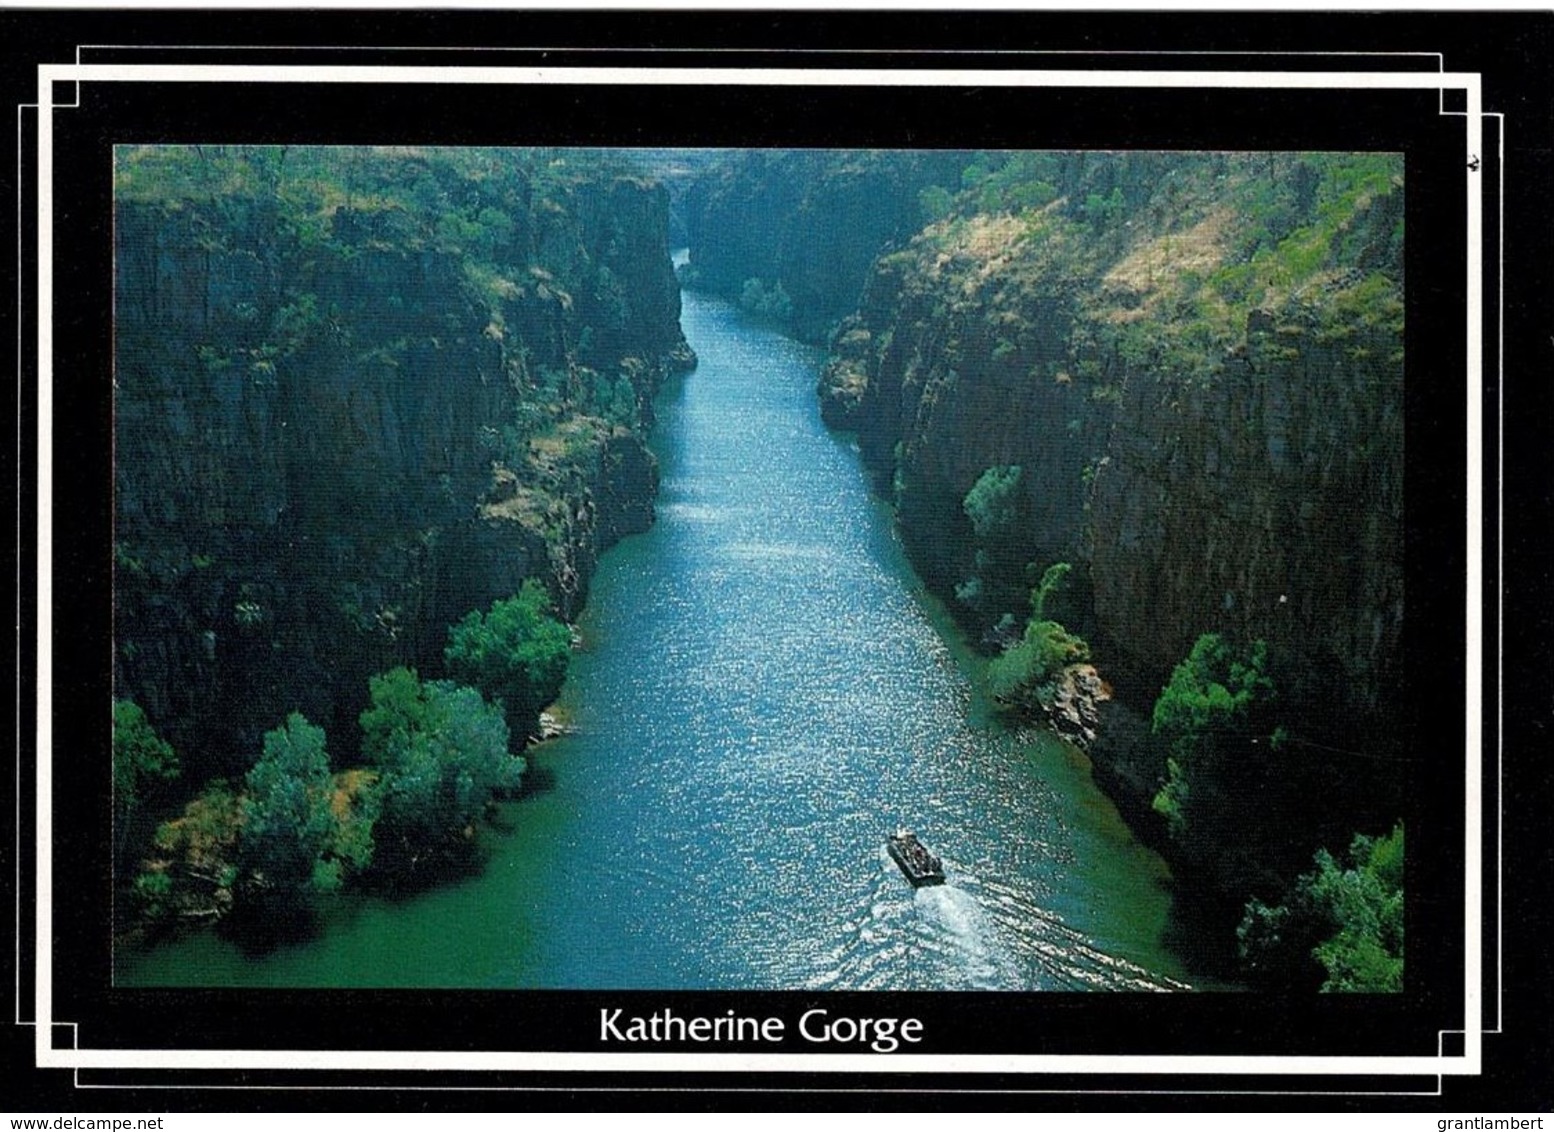 Katherine Gorge, Northern Territory - Unused - - Katherine